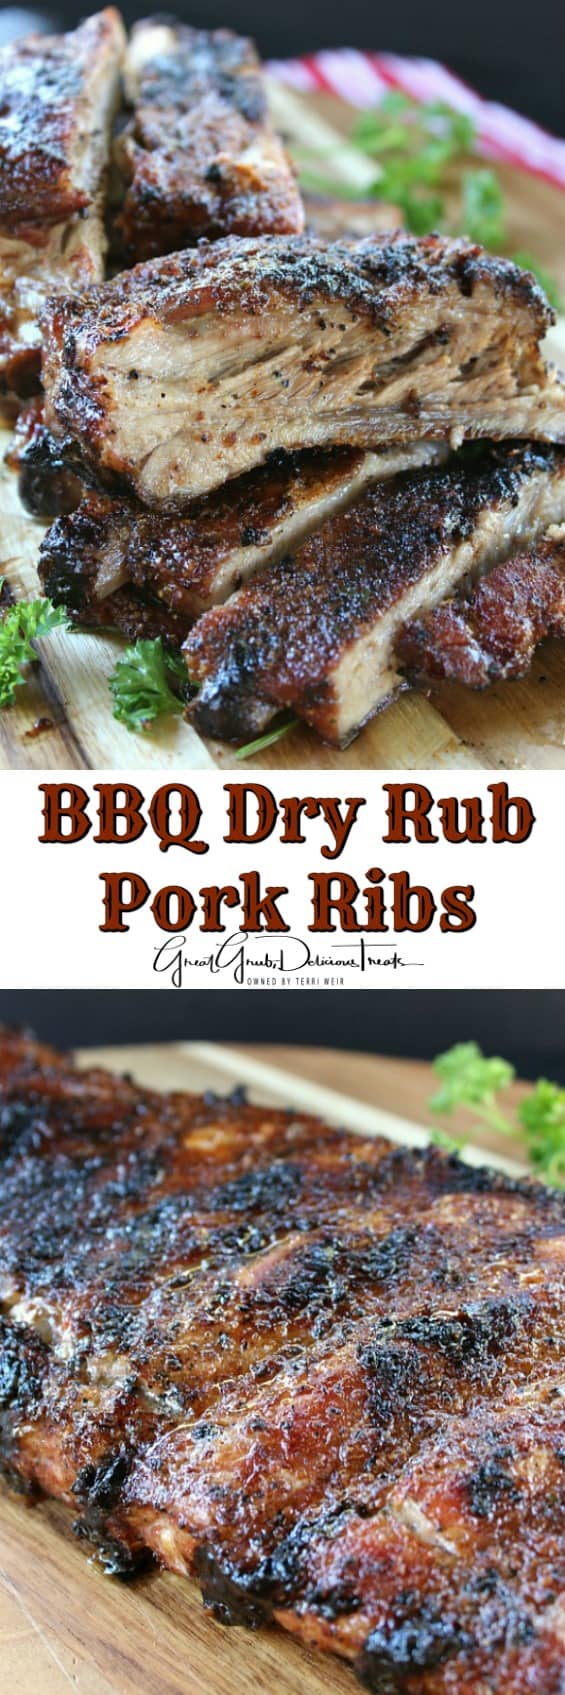 BBQ Dry Rub Pork Ribs